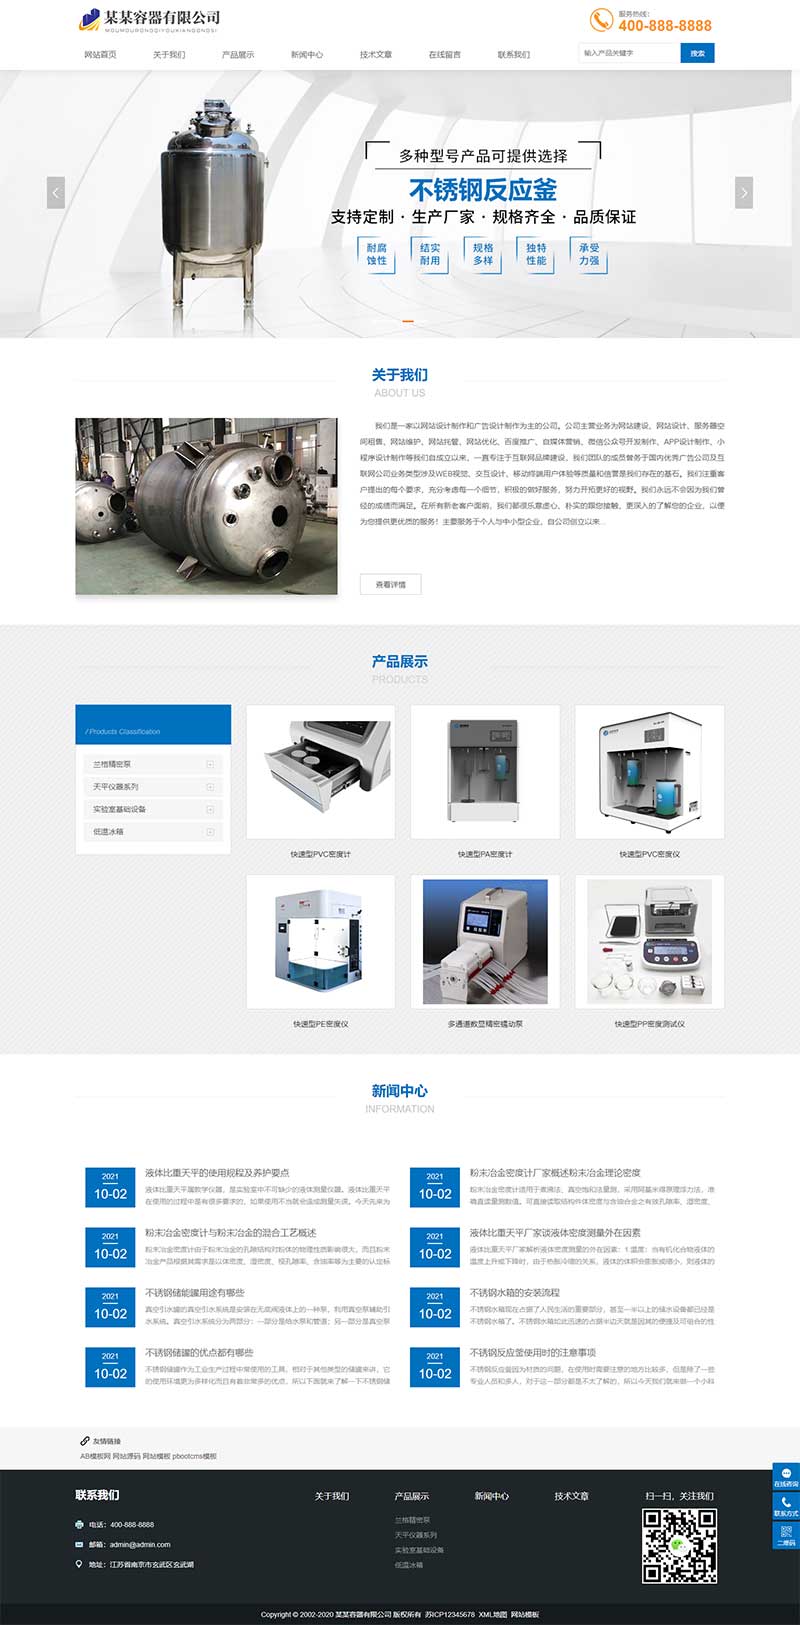 (自适应移动端)html5响应式蓝色机电设备材料配件企业网站电脑端模板展示图片